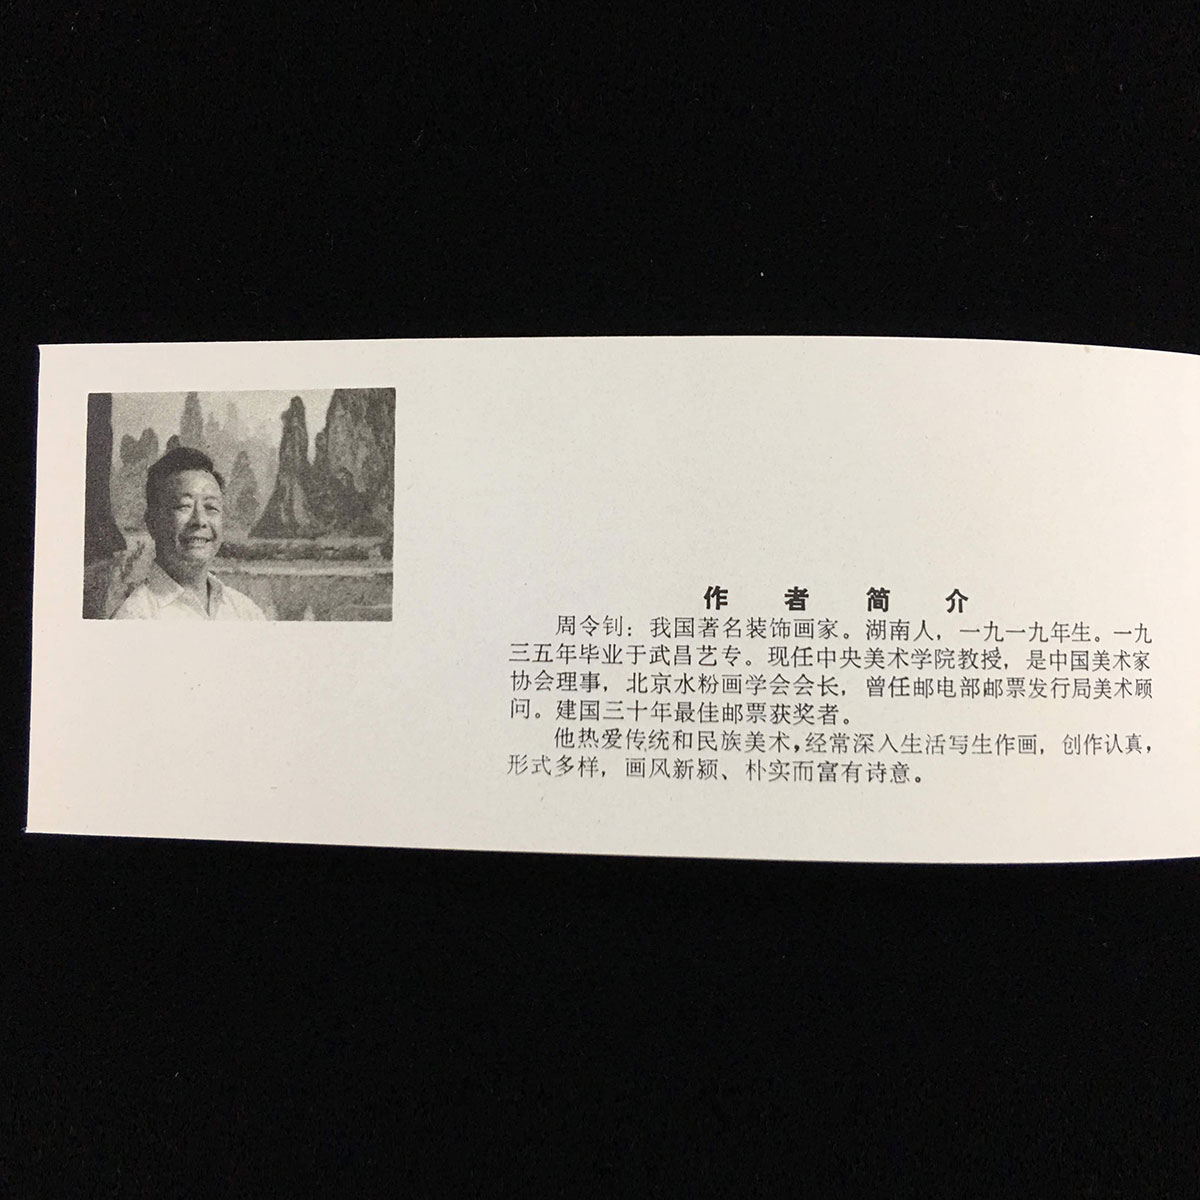 中国切手帳 年賀切手 1982年犬切手 | 収集ワールド